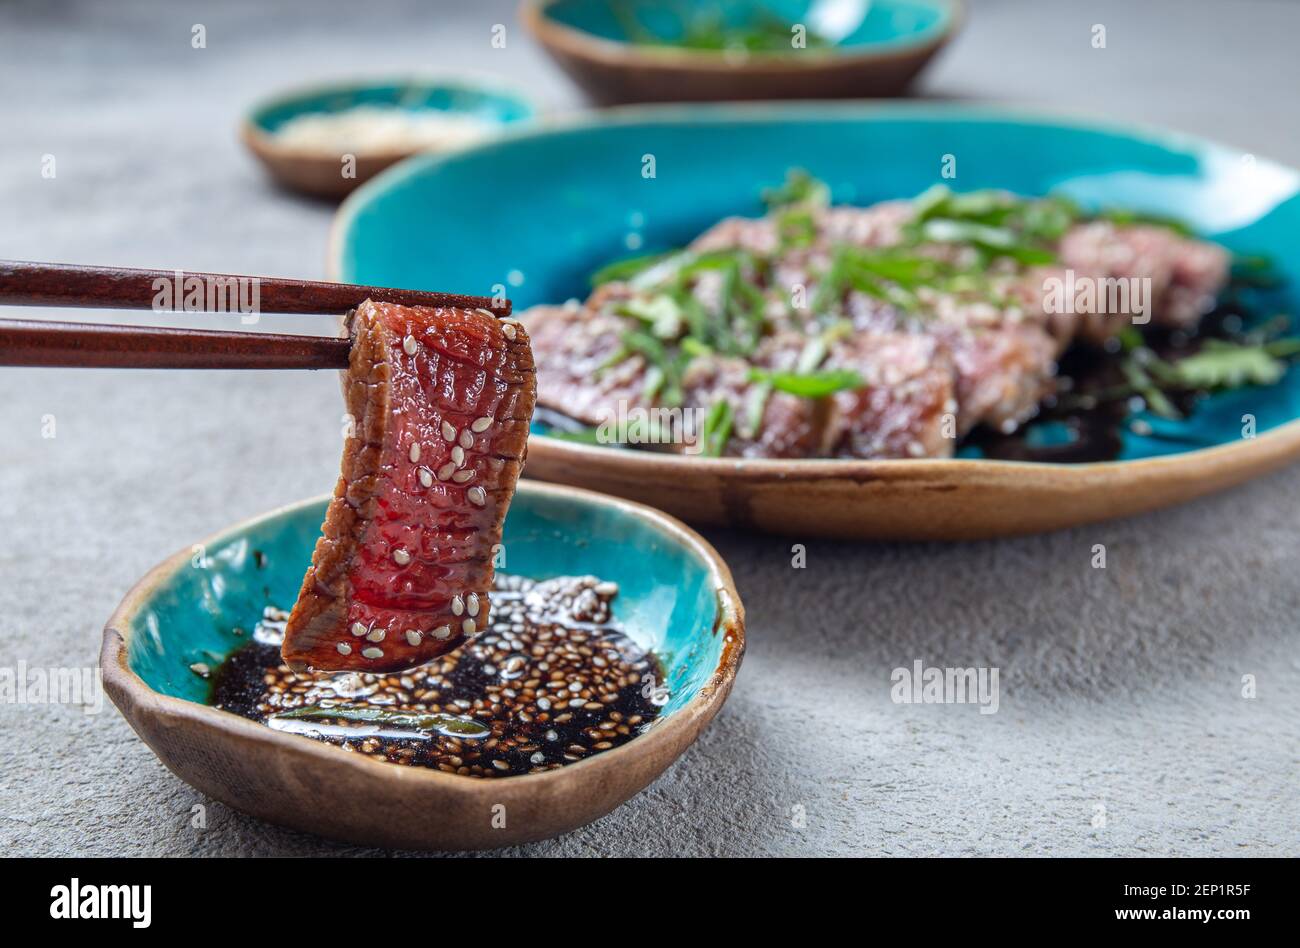 Tatataki de bœuf avec sauce et sésame sur une assiette bleue. Cuisine japonaise Banque D'Images